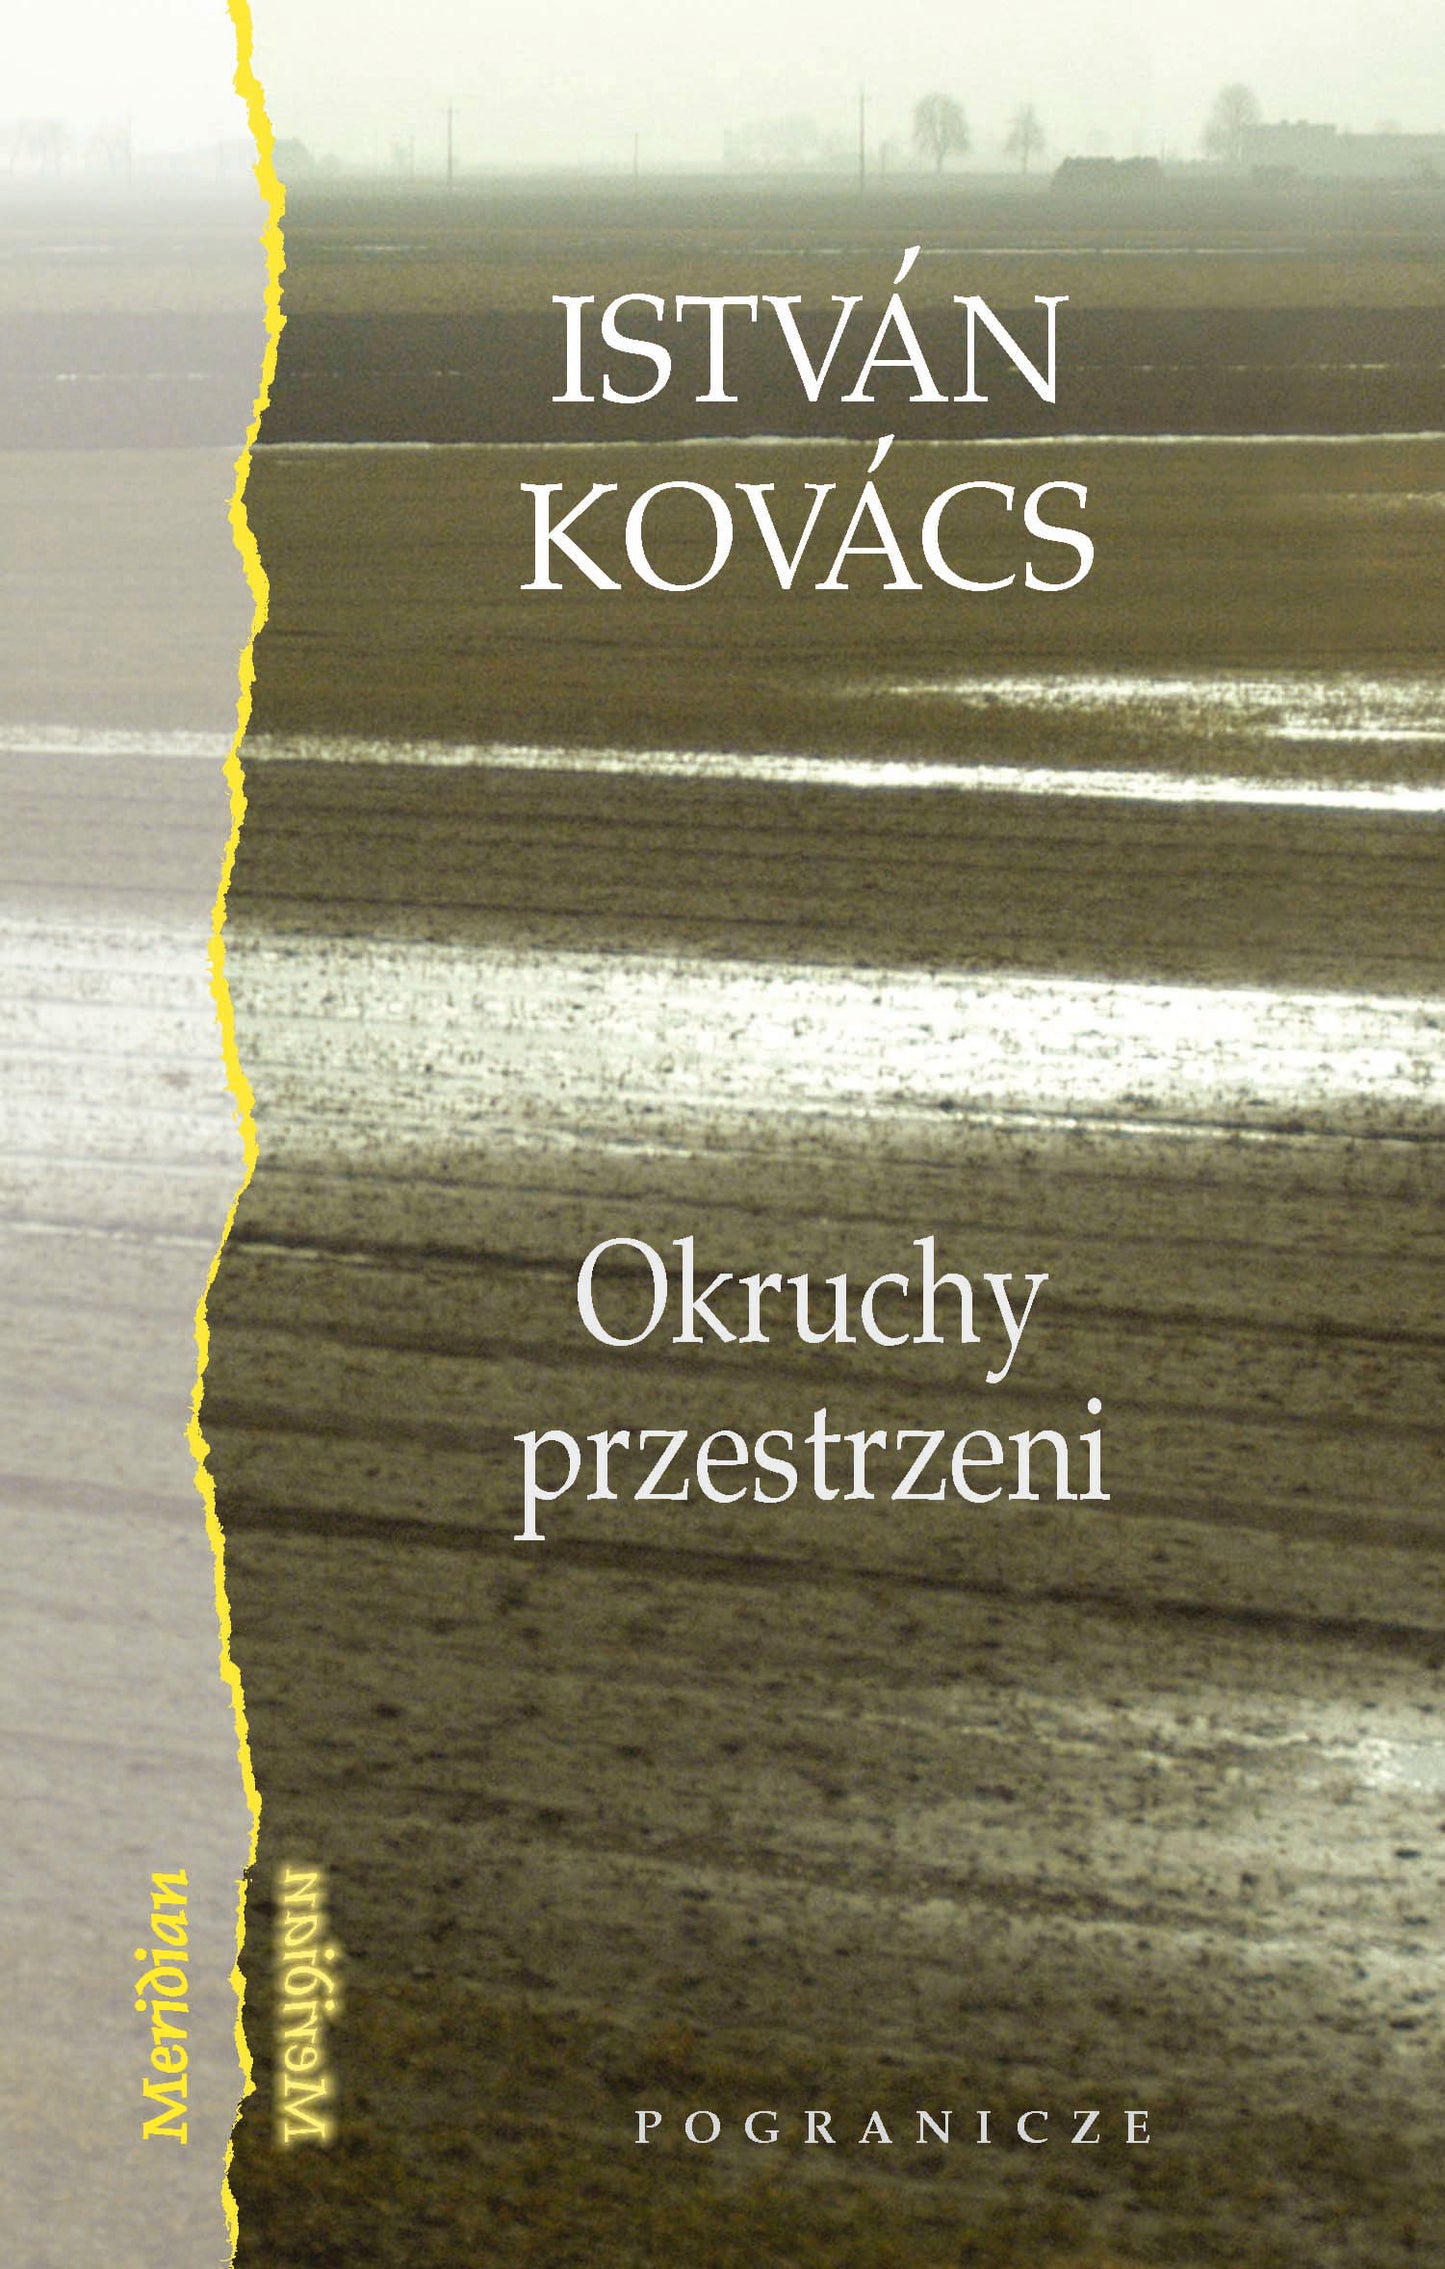 Okruchy przestrzeni, István Kovács